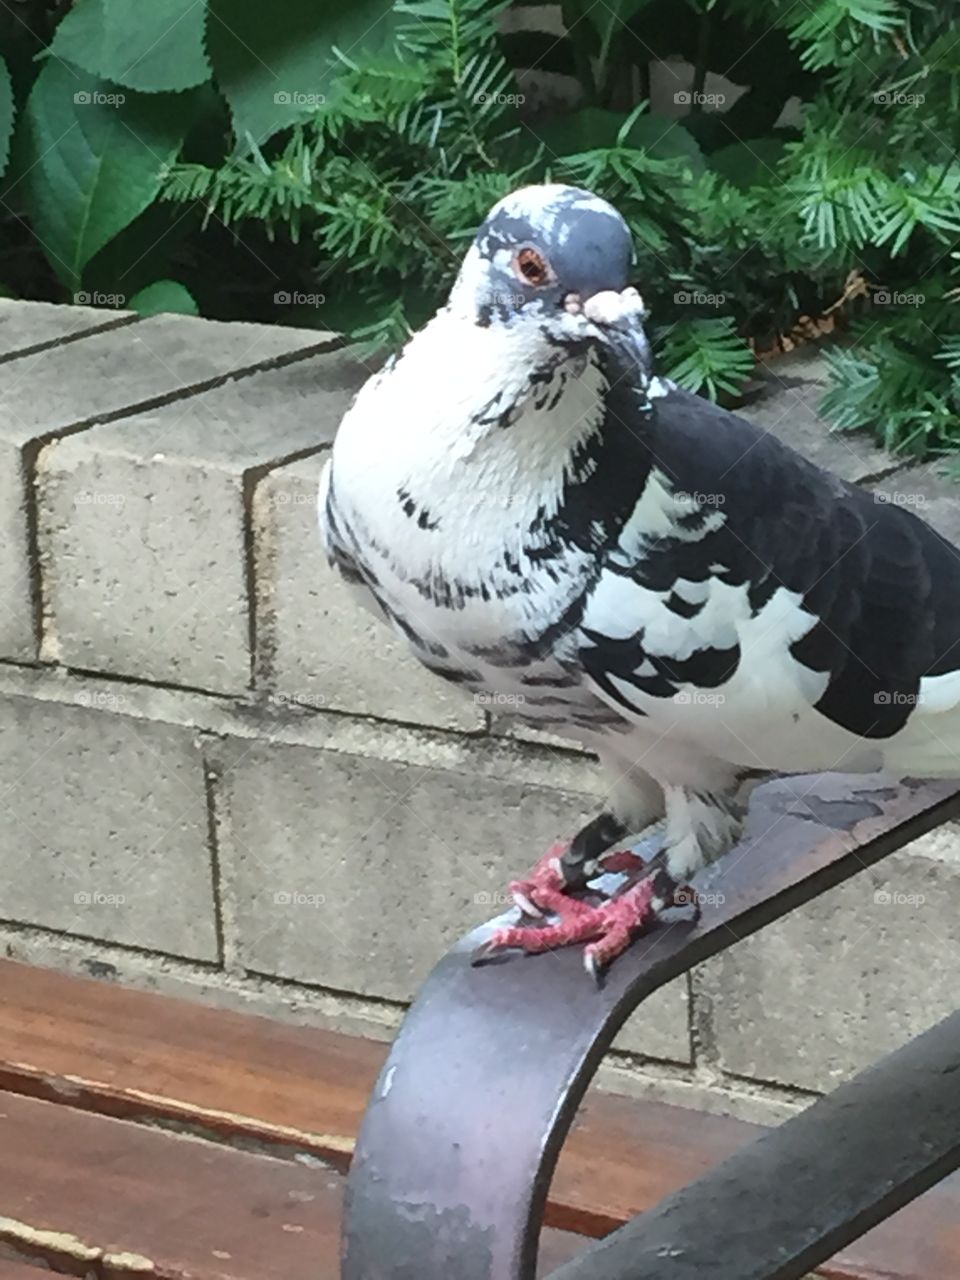 Pigeon is stalking me